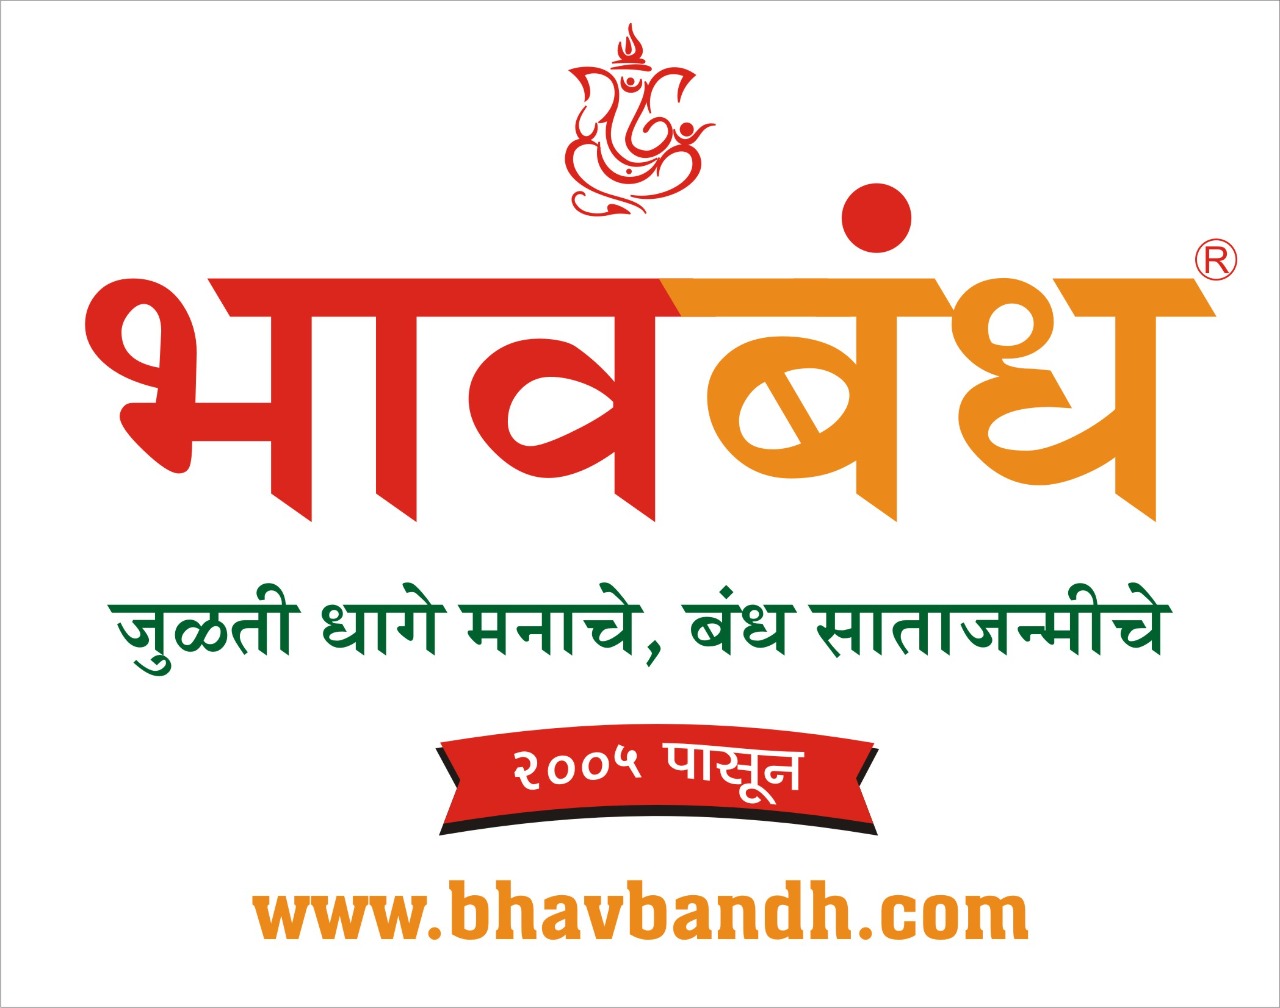 Bhavbandh